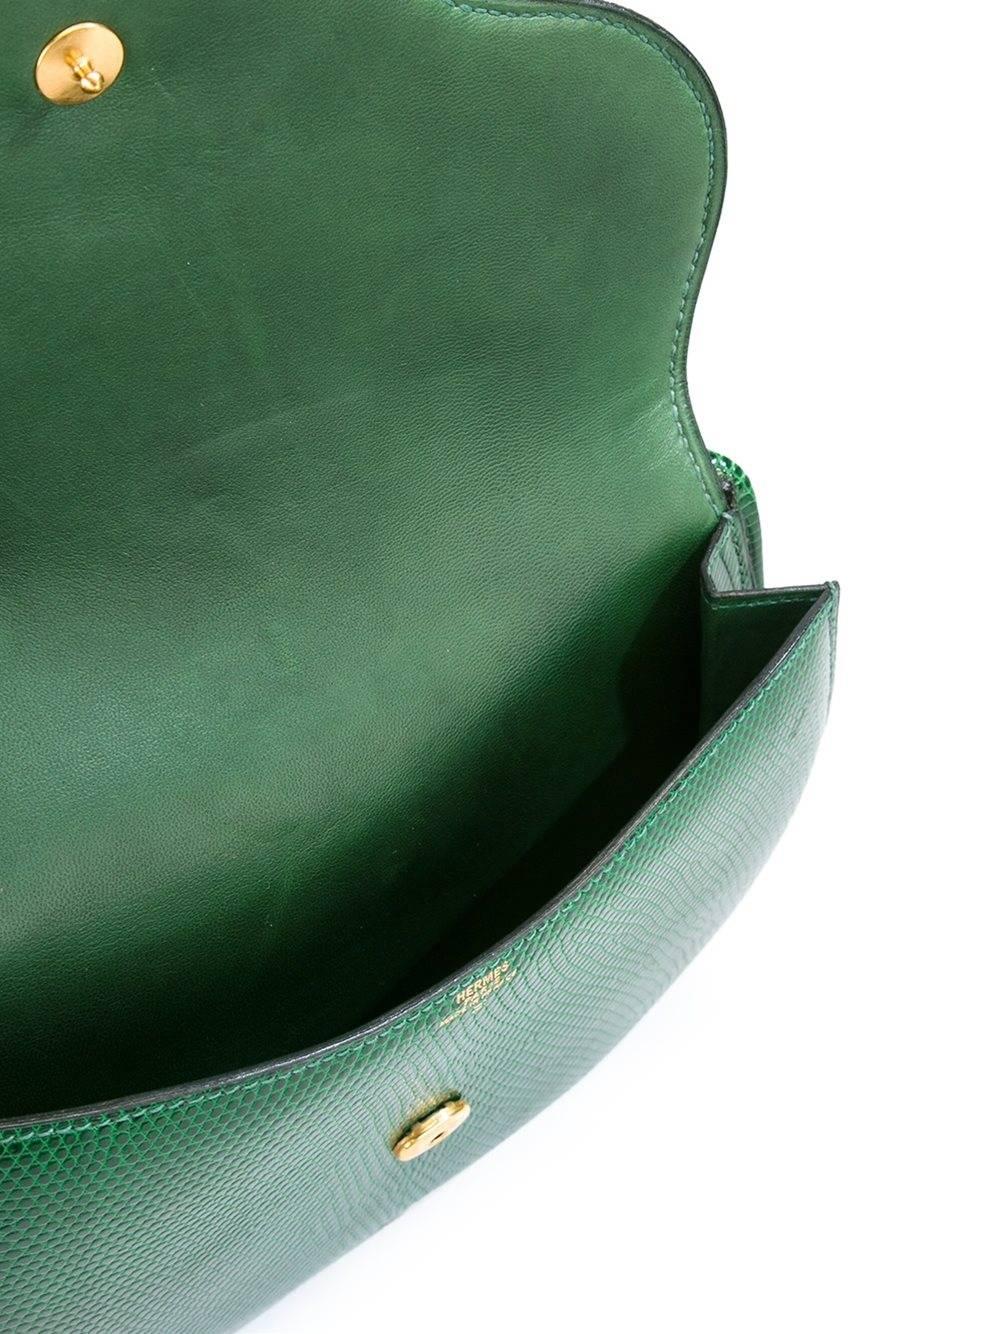 Women's Gorgeous Hermes 70s green lizard bag